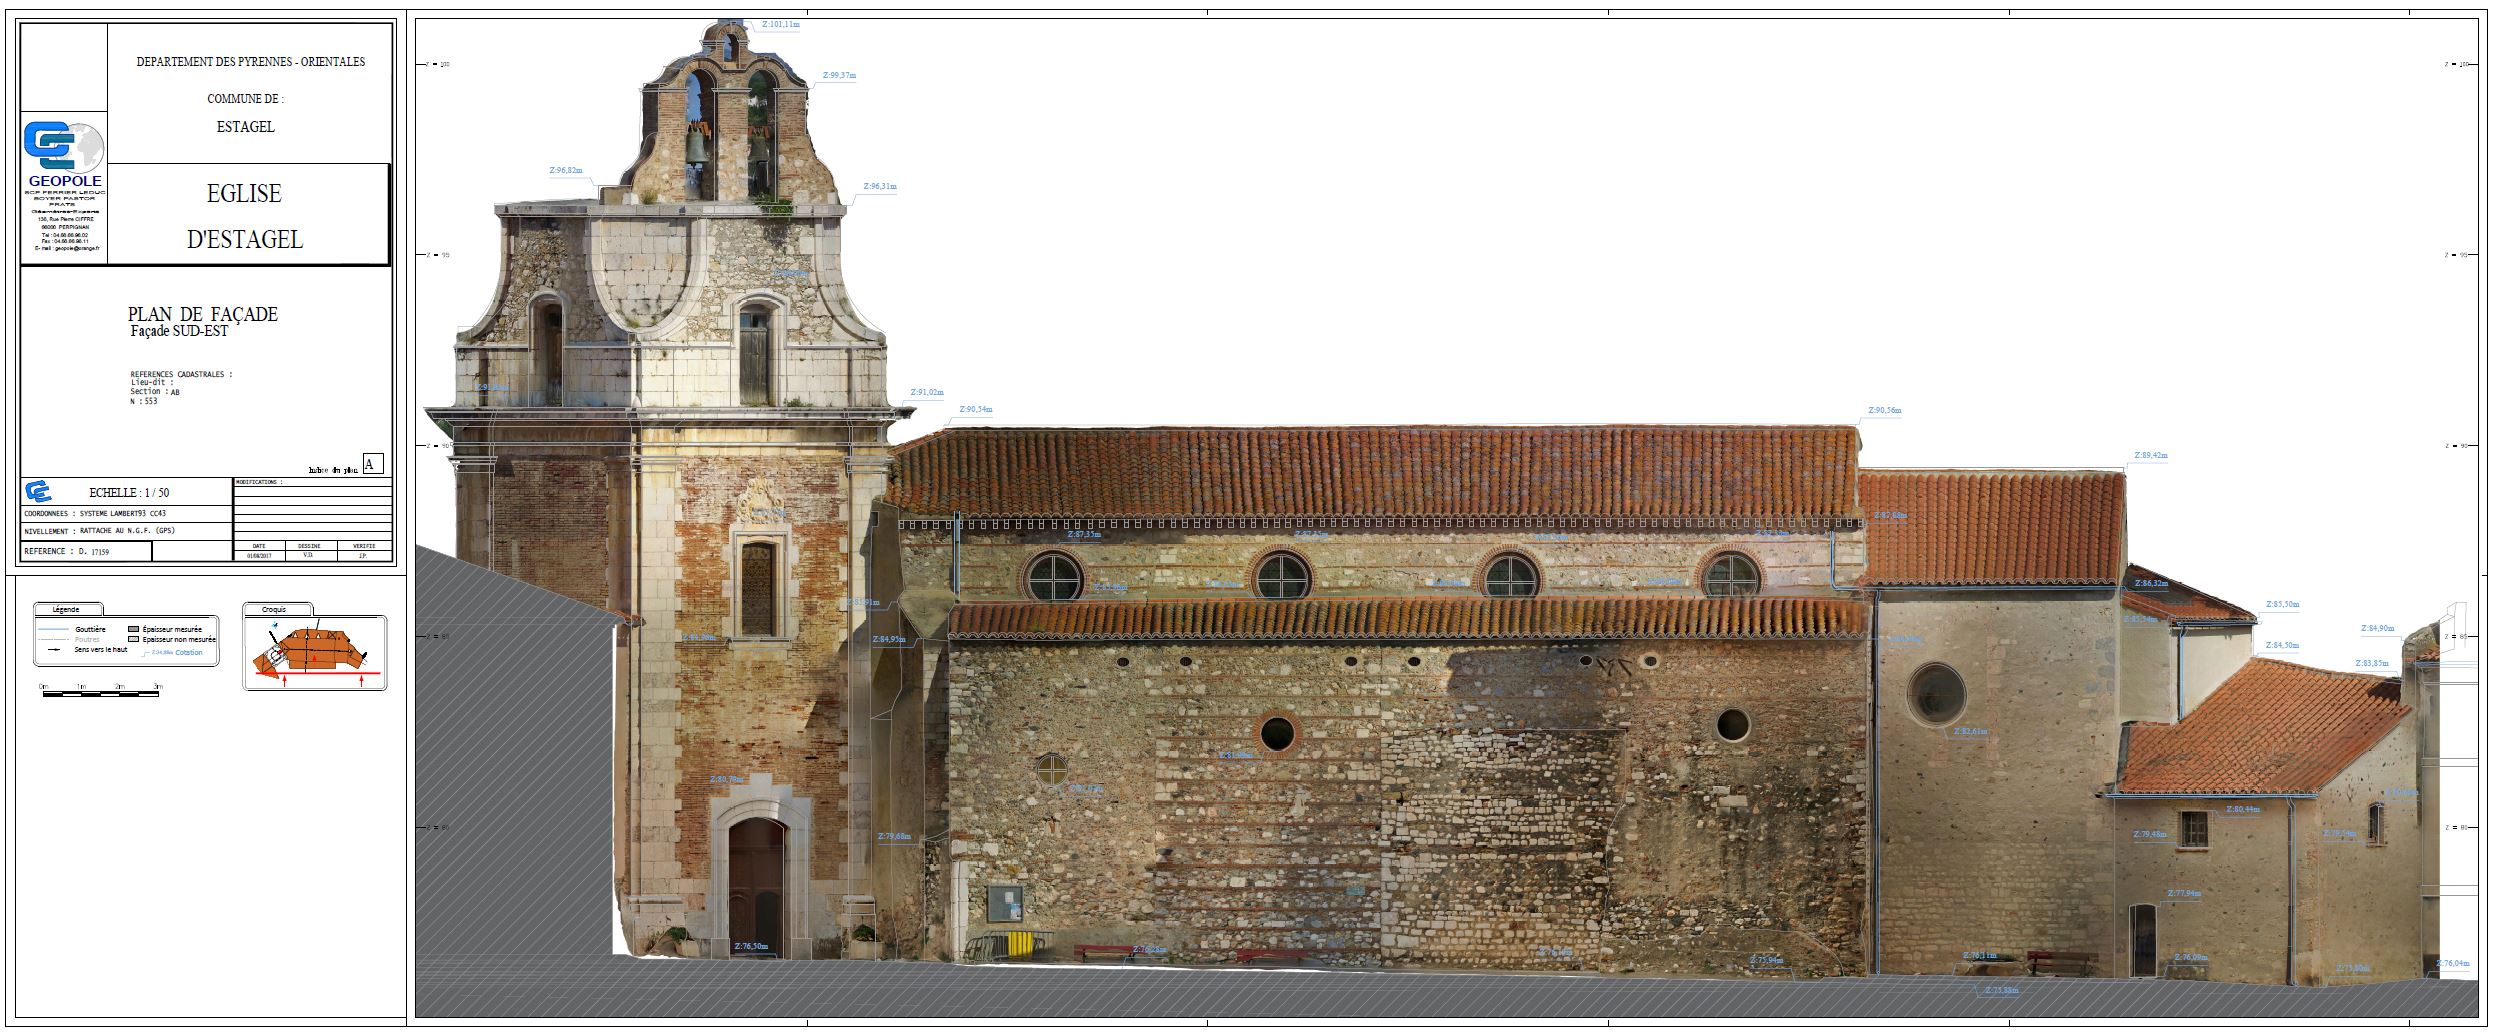 Orthophotoplan d'une élévation de l'église d'Estagel avec digitalisation superposée.